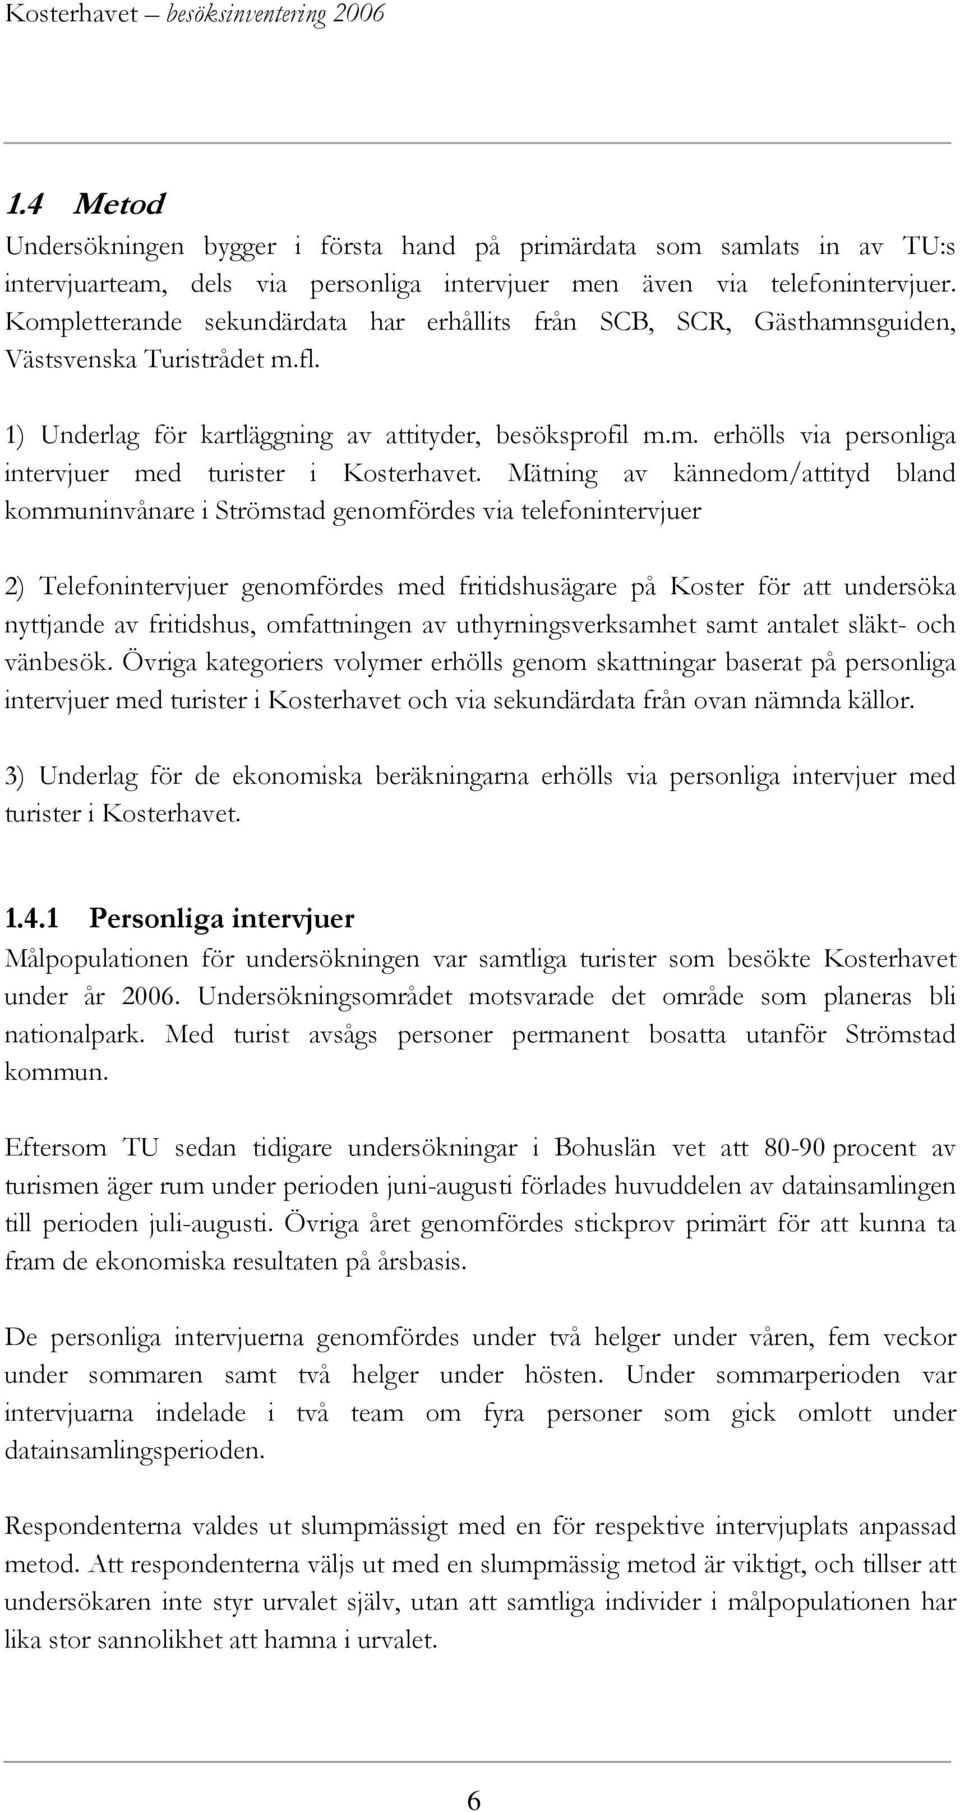 Mätning av kännedom/attityd bland kommuninvånare i Strömstad genomfördes via telefonintervjuer 2) Telefonintervjuer genomfördes med fritidshusägare på Koster för att undersöka nyttjande av